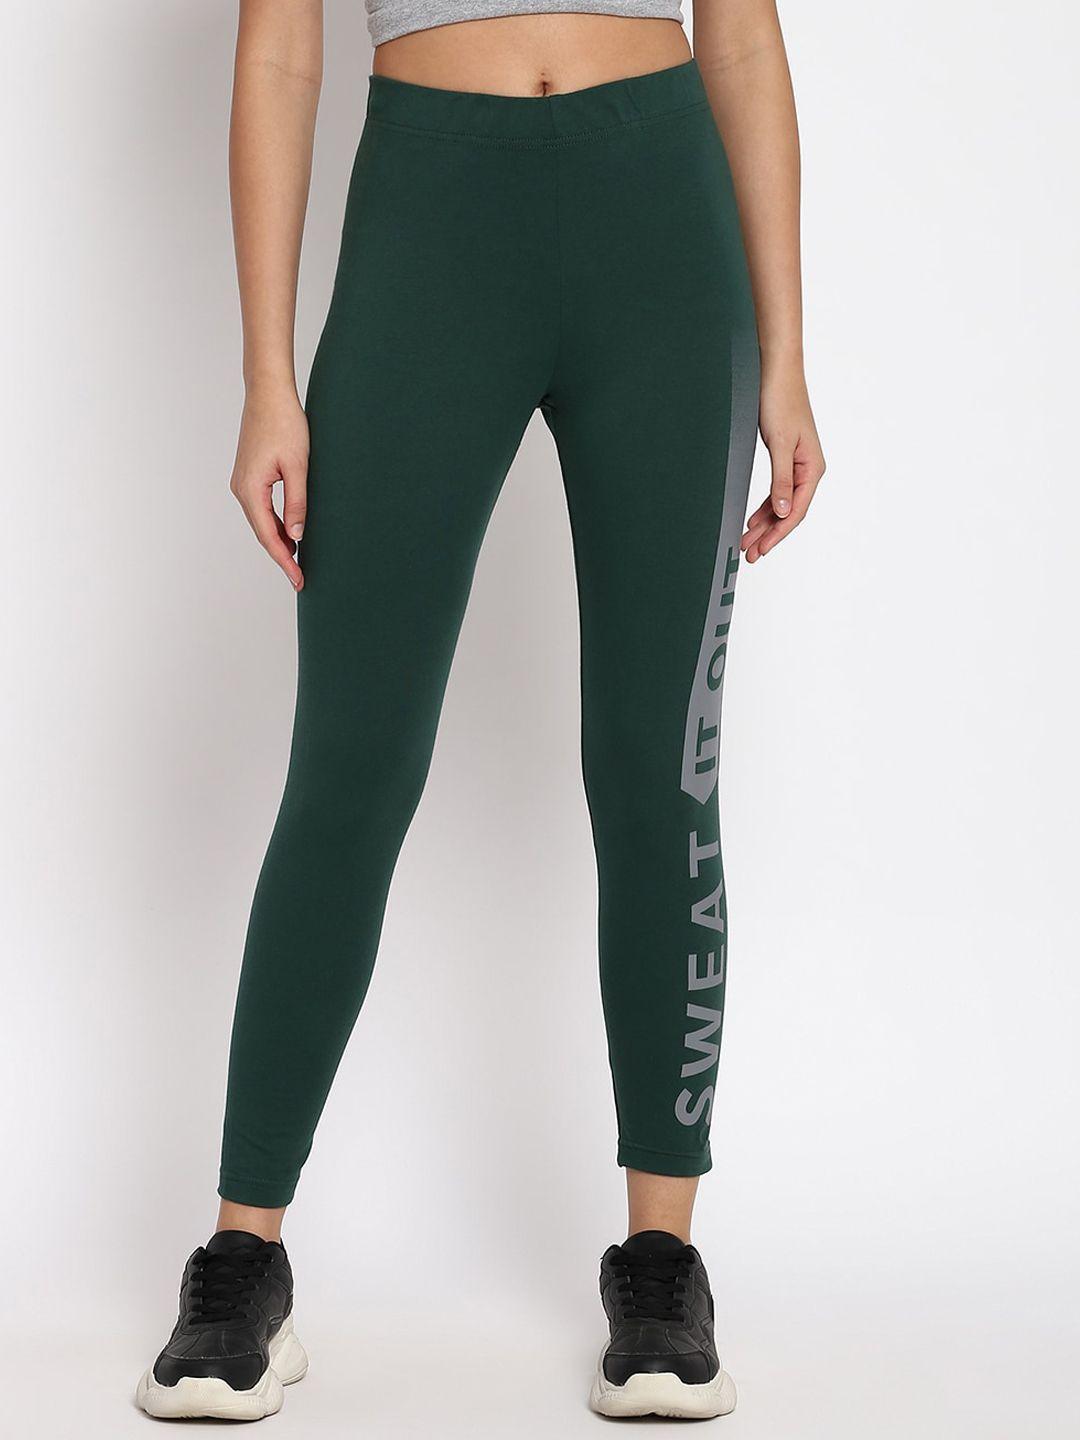 abof women green & grey printed regular fit leggings